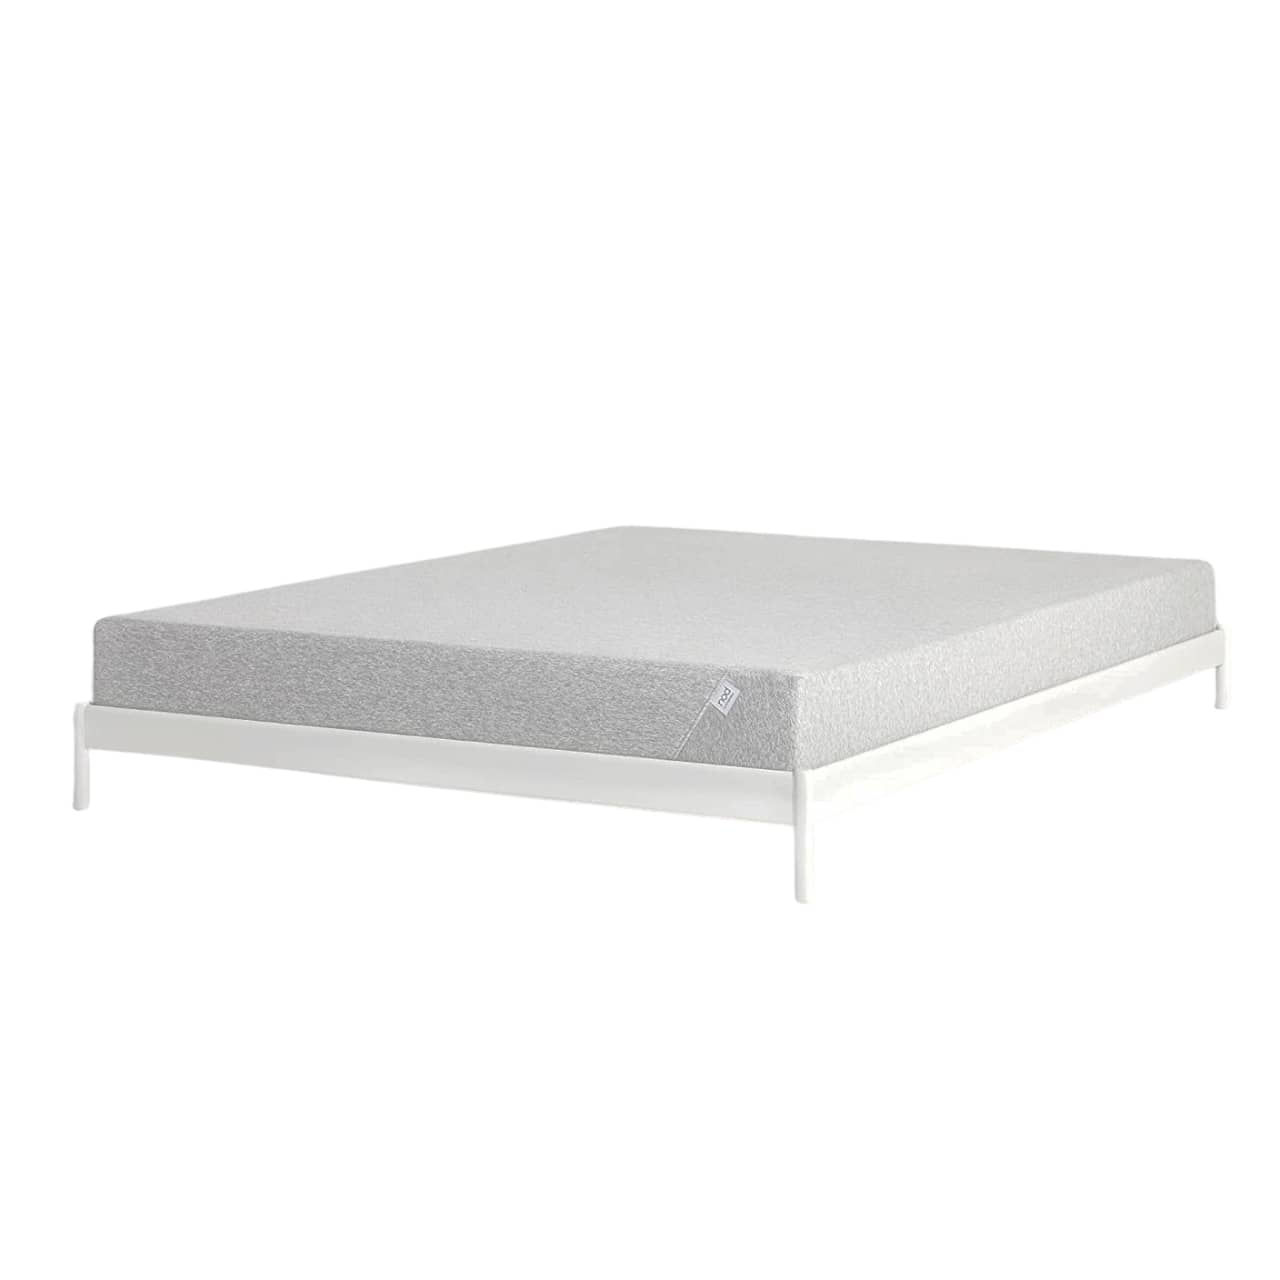 8 inch queen mattress